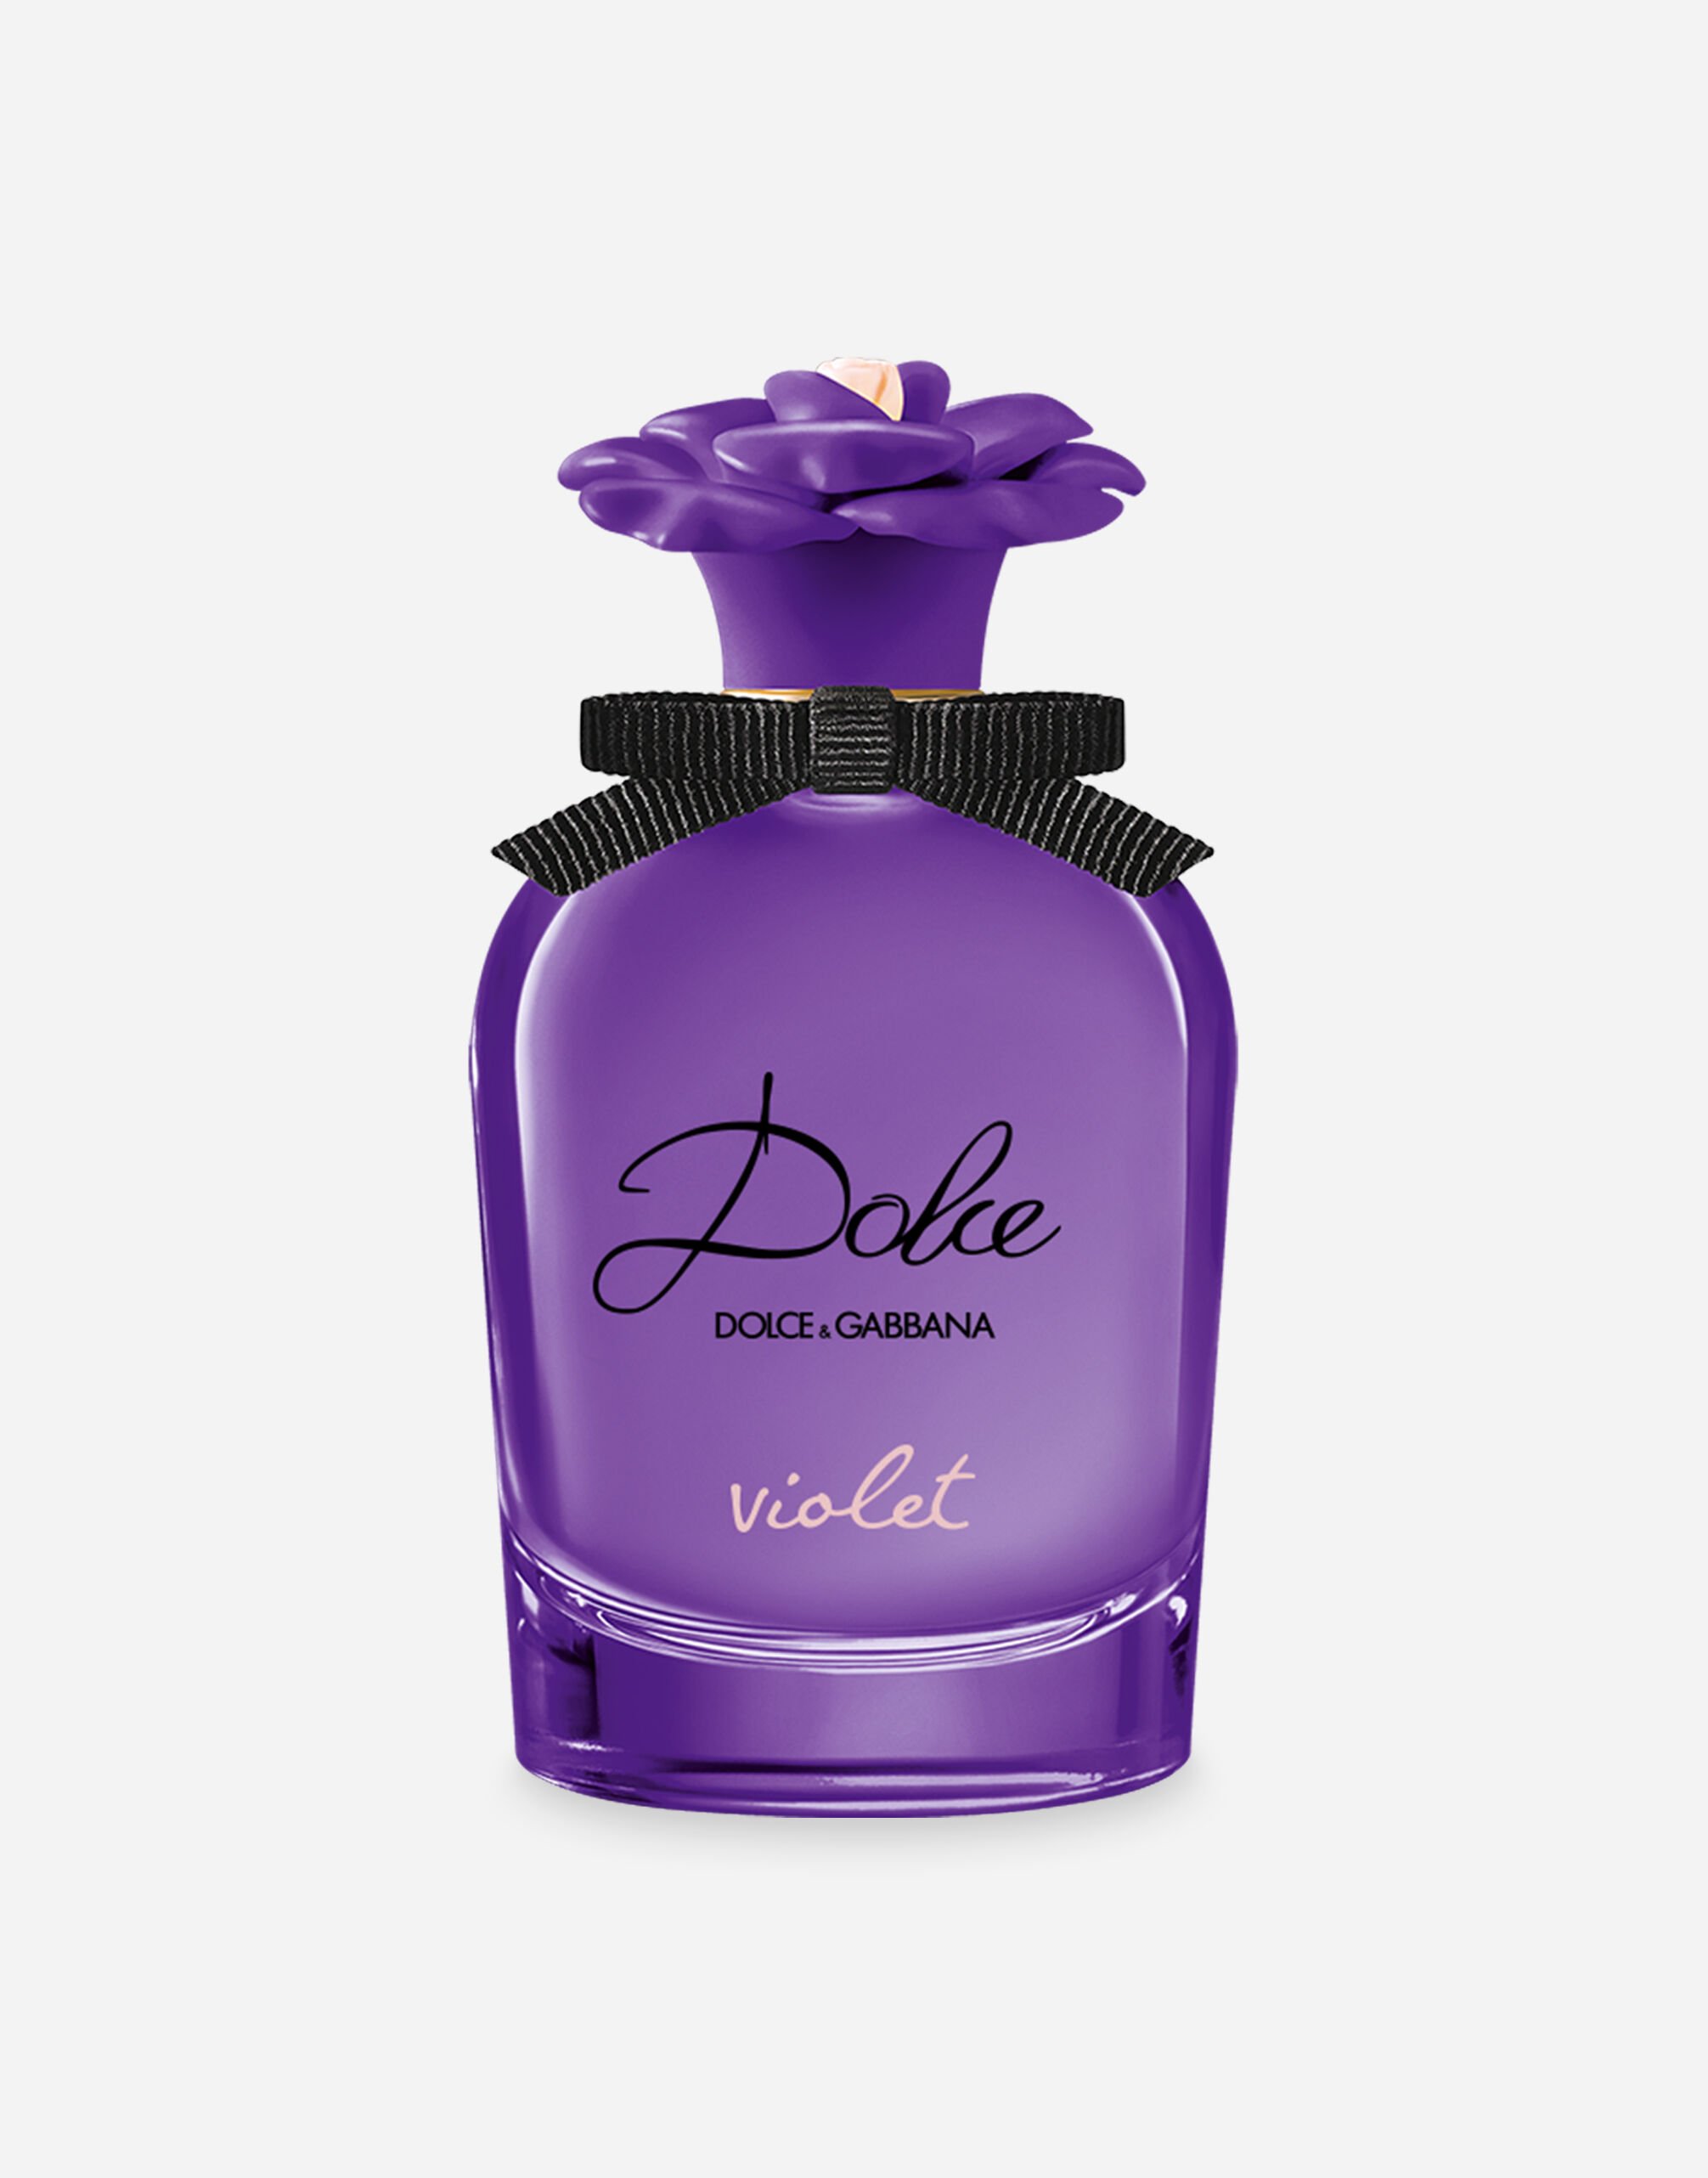 ${brand} Dolce Violet Eau de Toilette ${colorDescription} ${masterID}